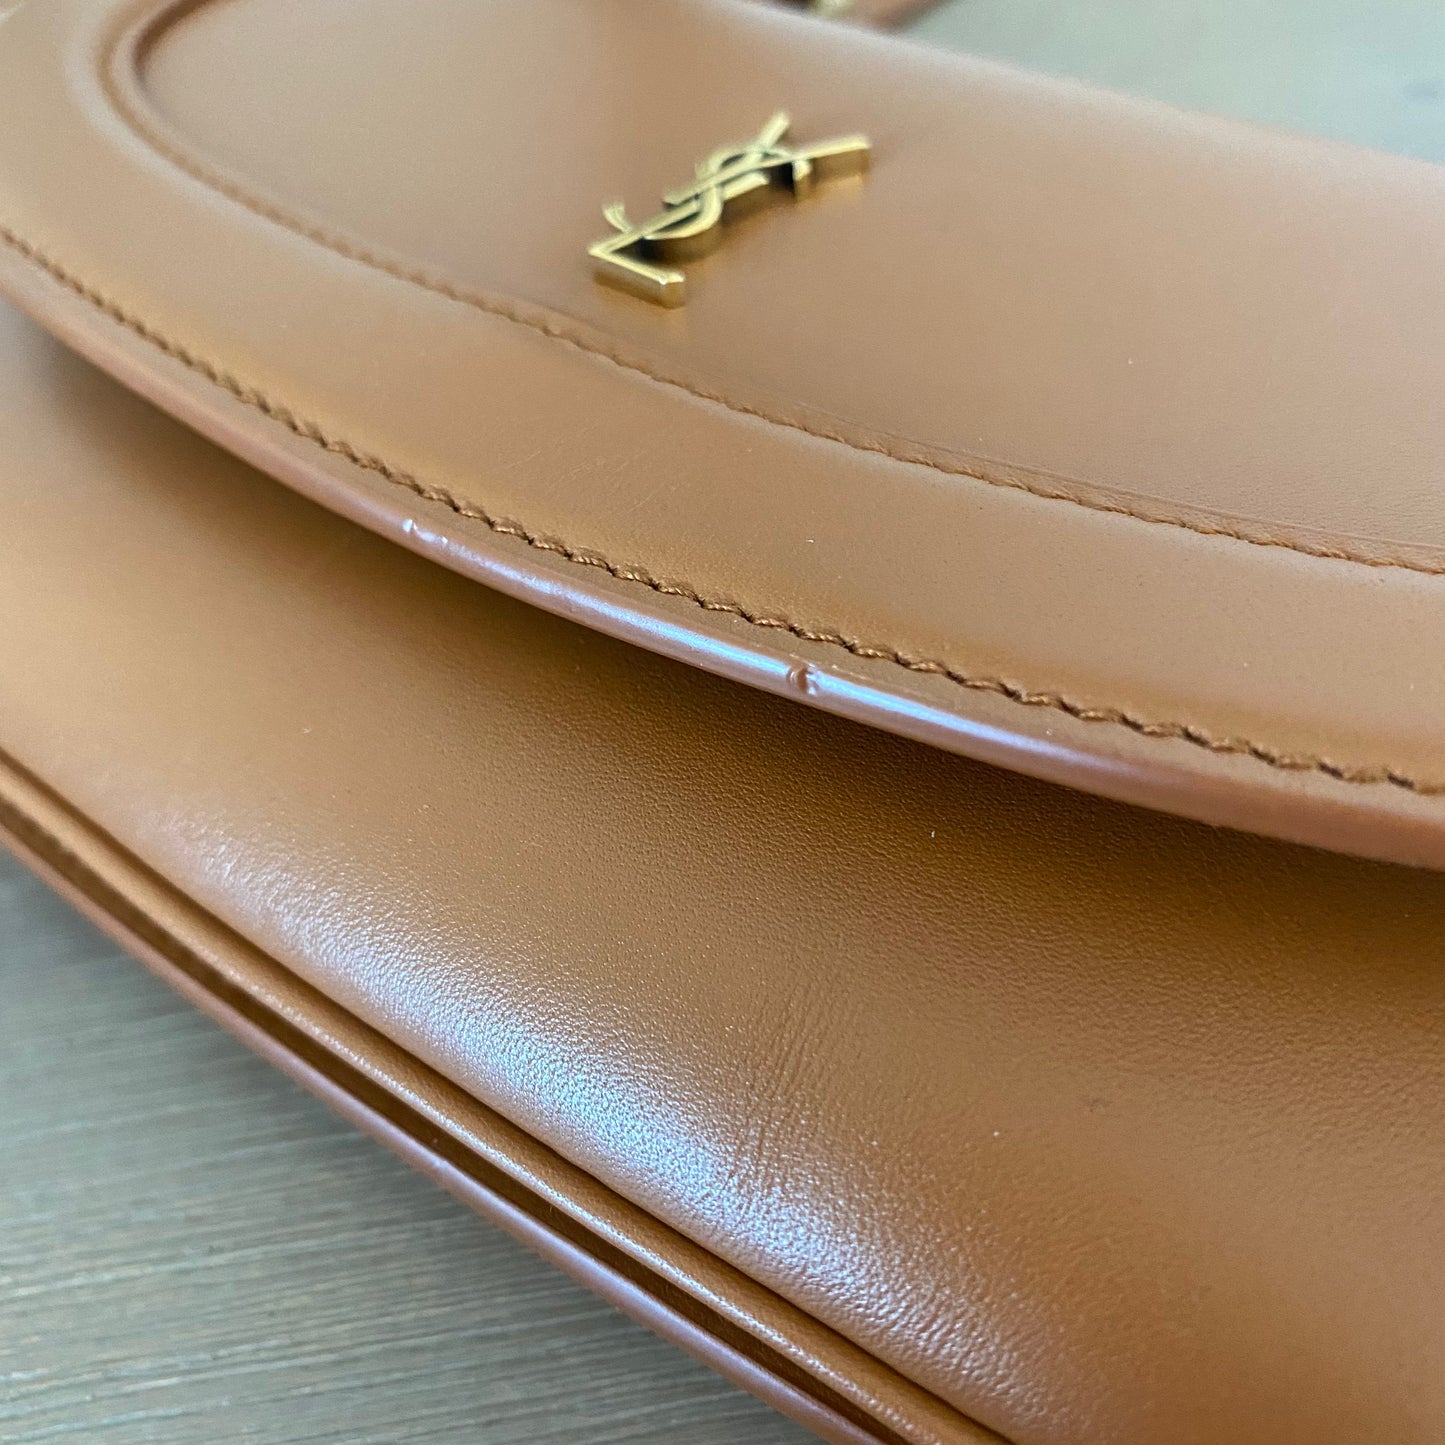 Saint Laurent Small Leather Charlie Shoulder Bag